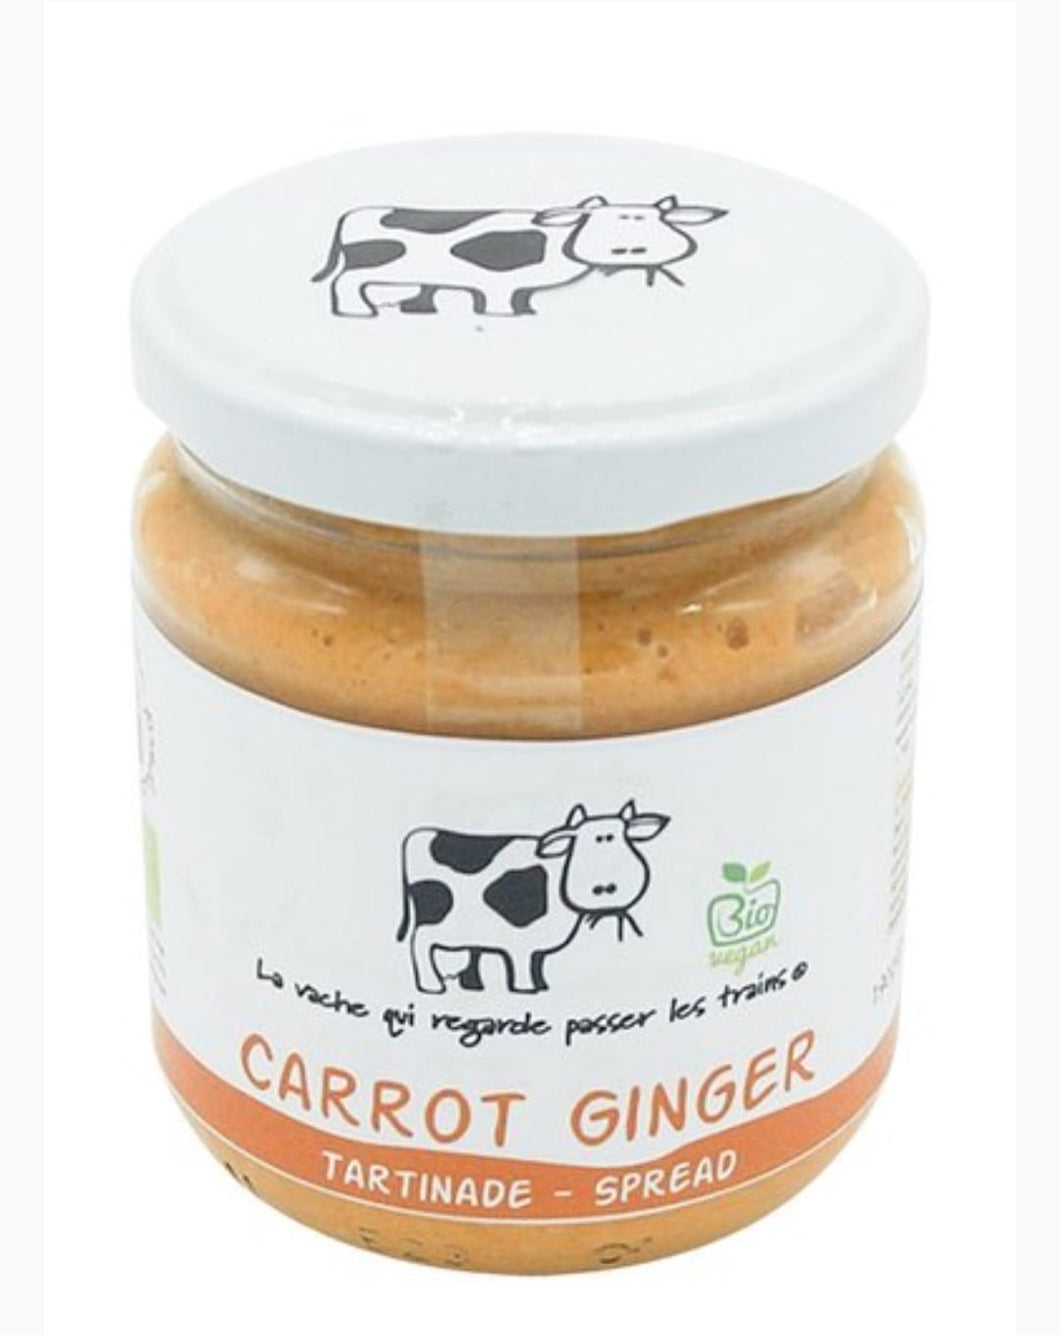 Carrot / ginger dip